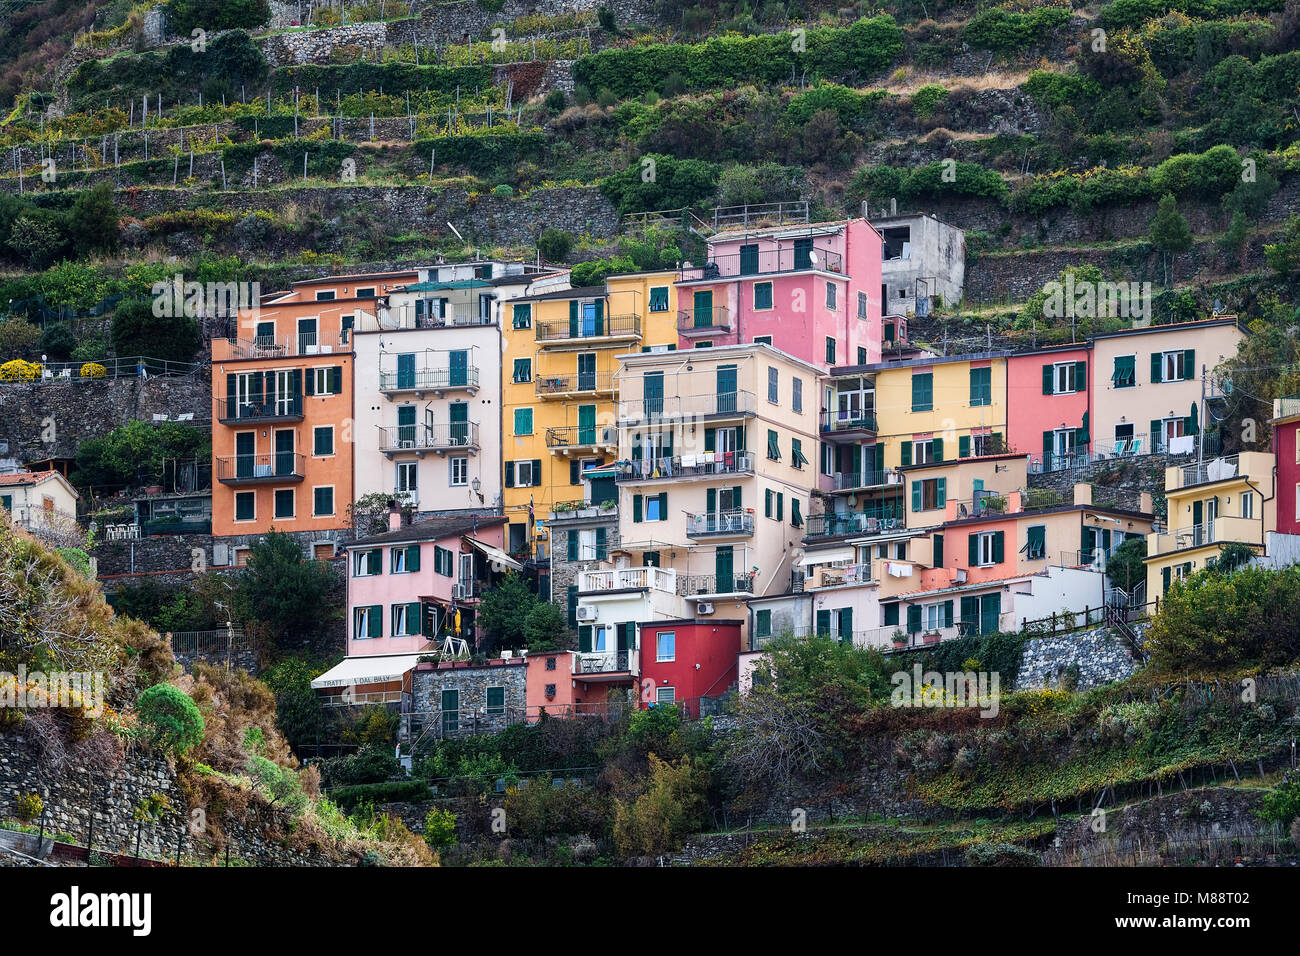 Su encantadora arquitectura en el pueblo de Manarola, Cinque Terre, Liguria, Italia. Foto de stock